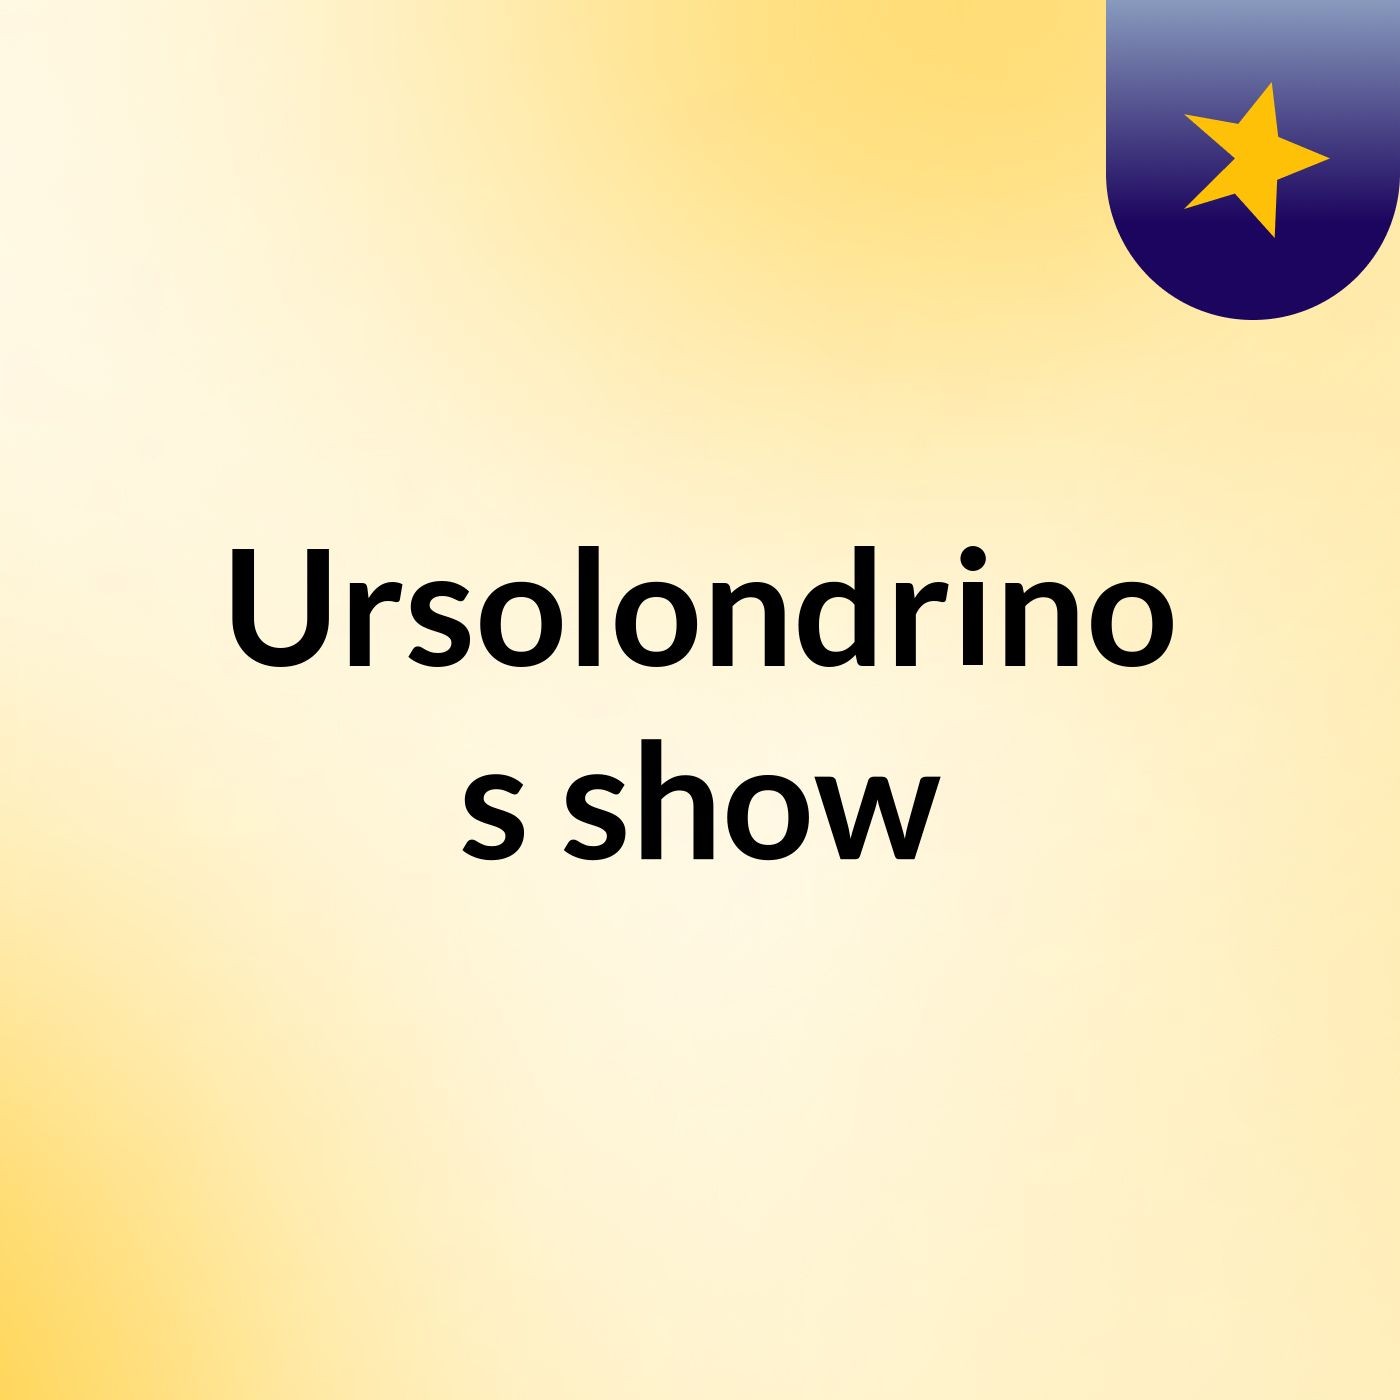 Ursolondrino's show